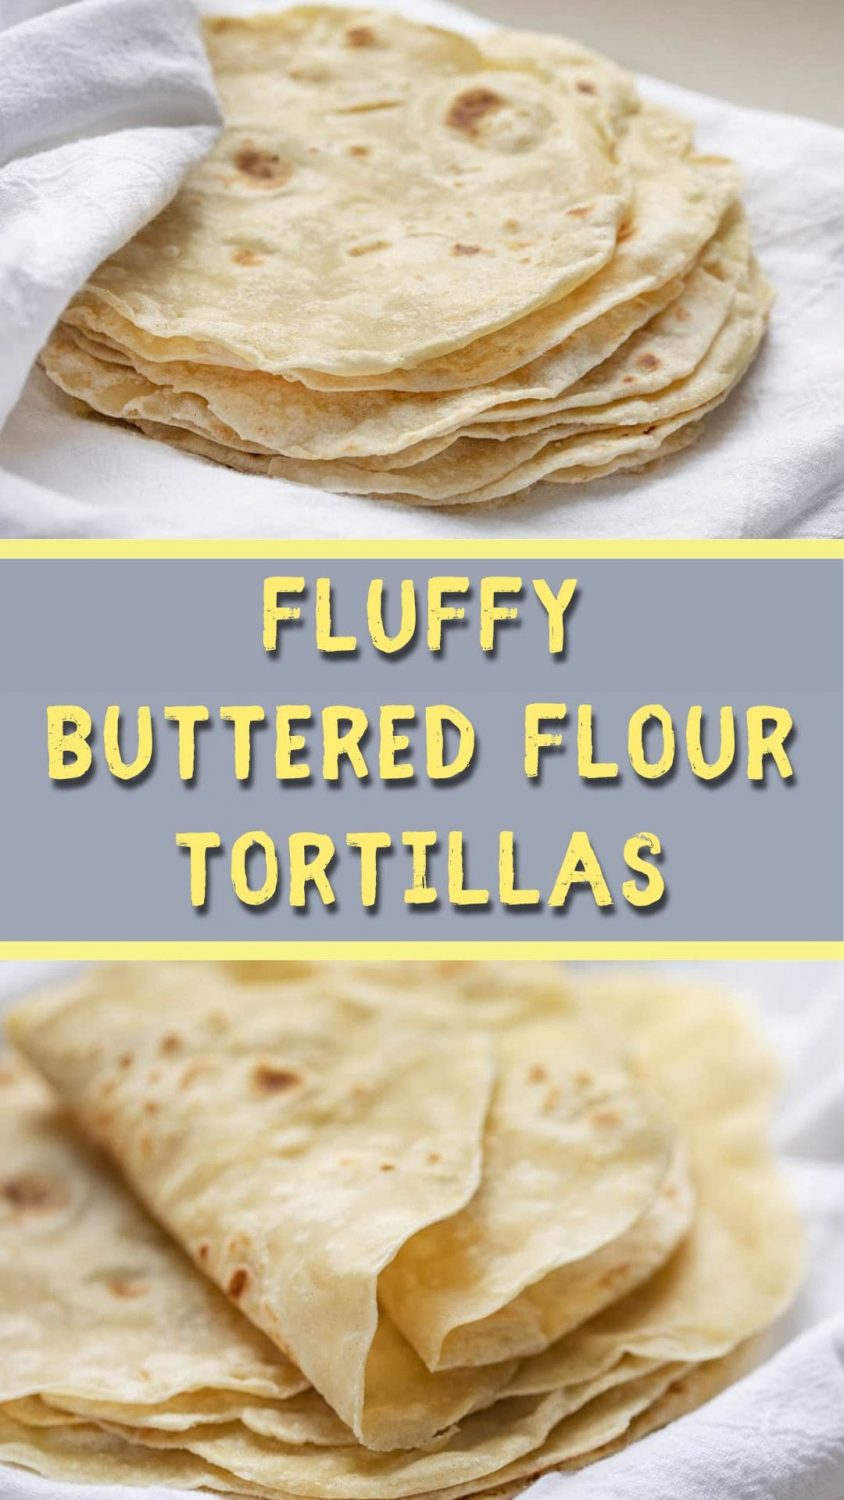 Fluffy Buttered Flour Tortillas